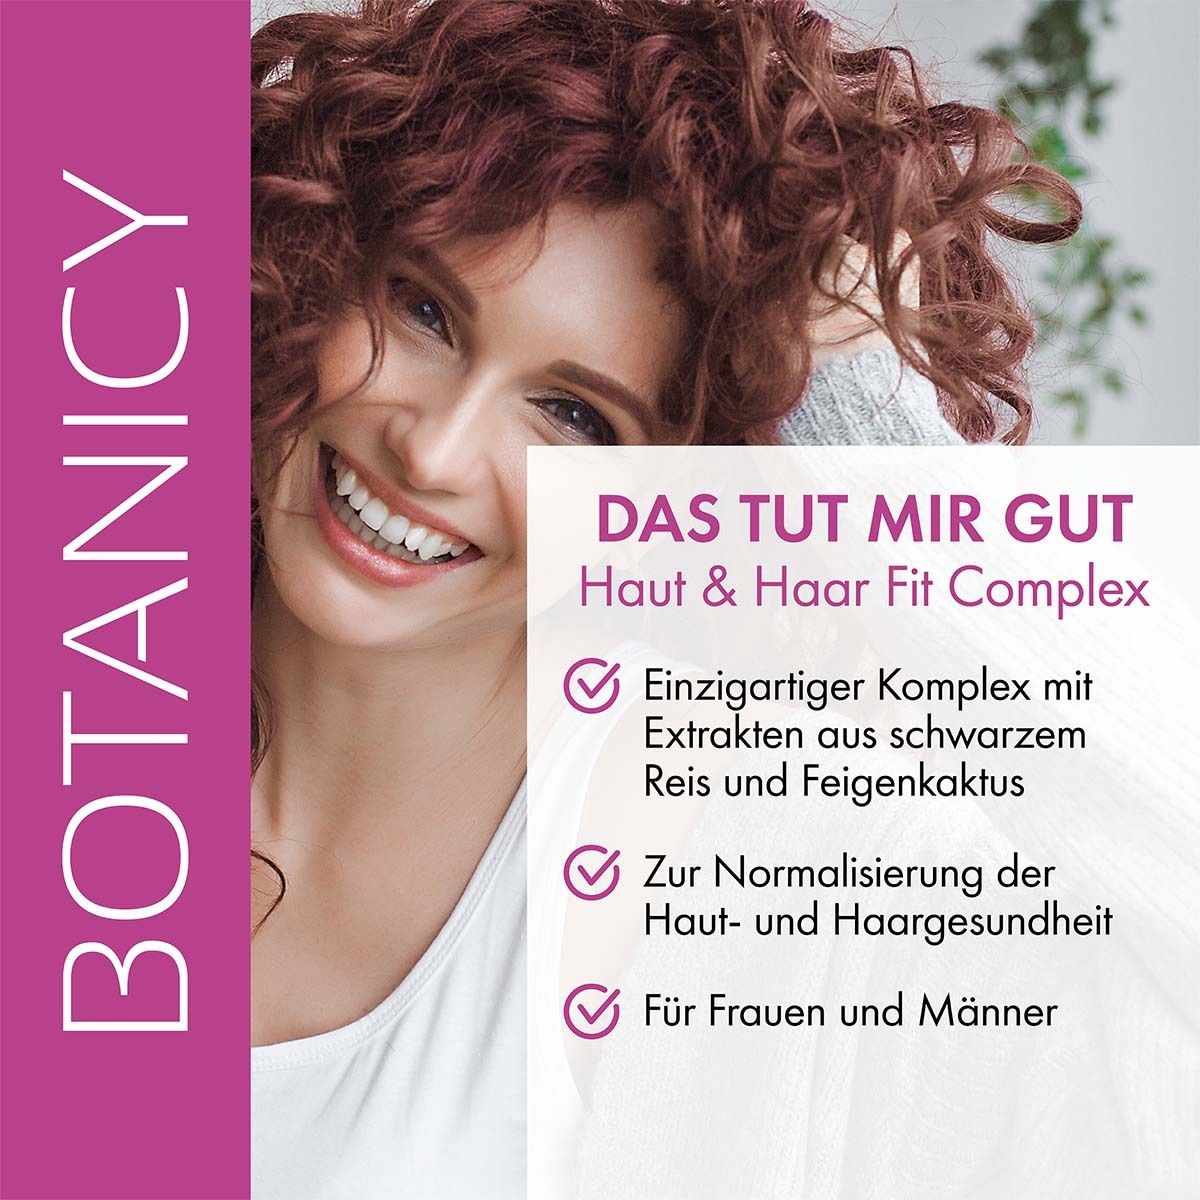 BOTANICY Haut & Haar Fit Complex Actrisave